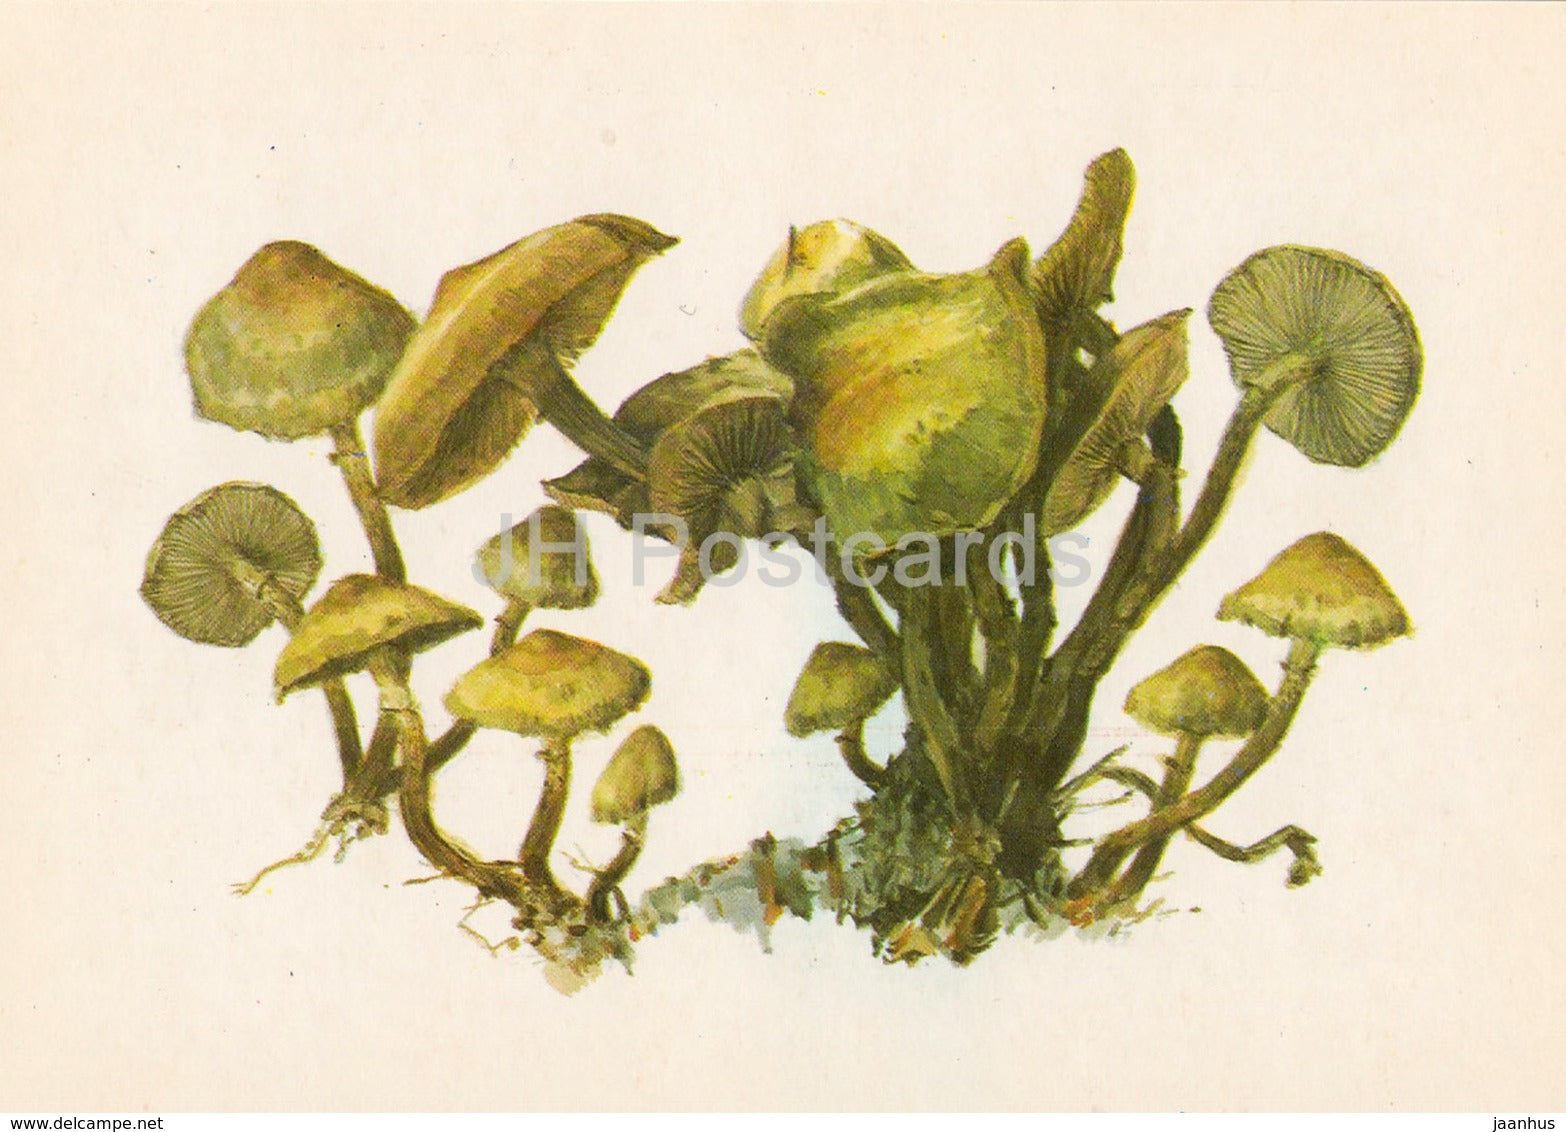 sheathed woodtuft - Kuehneromyces mutabilis - illustration by A. Shipilenko - Mushrooms - 1976 - Russia USSR - unused - JH Postcards